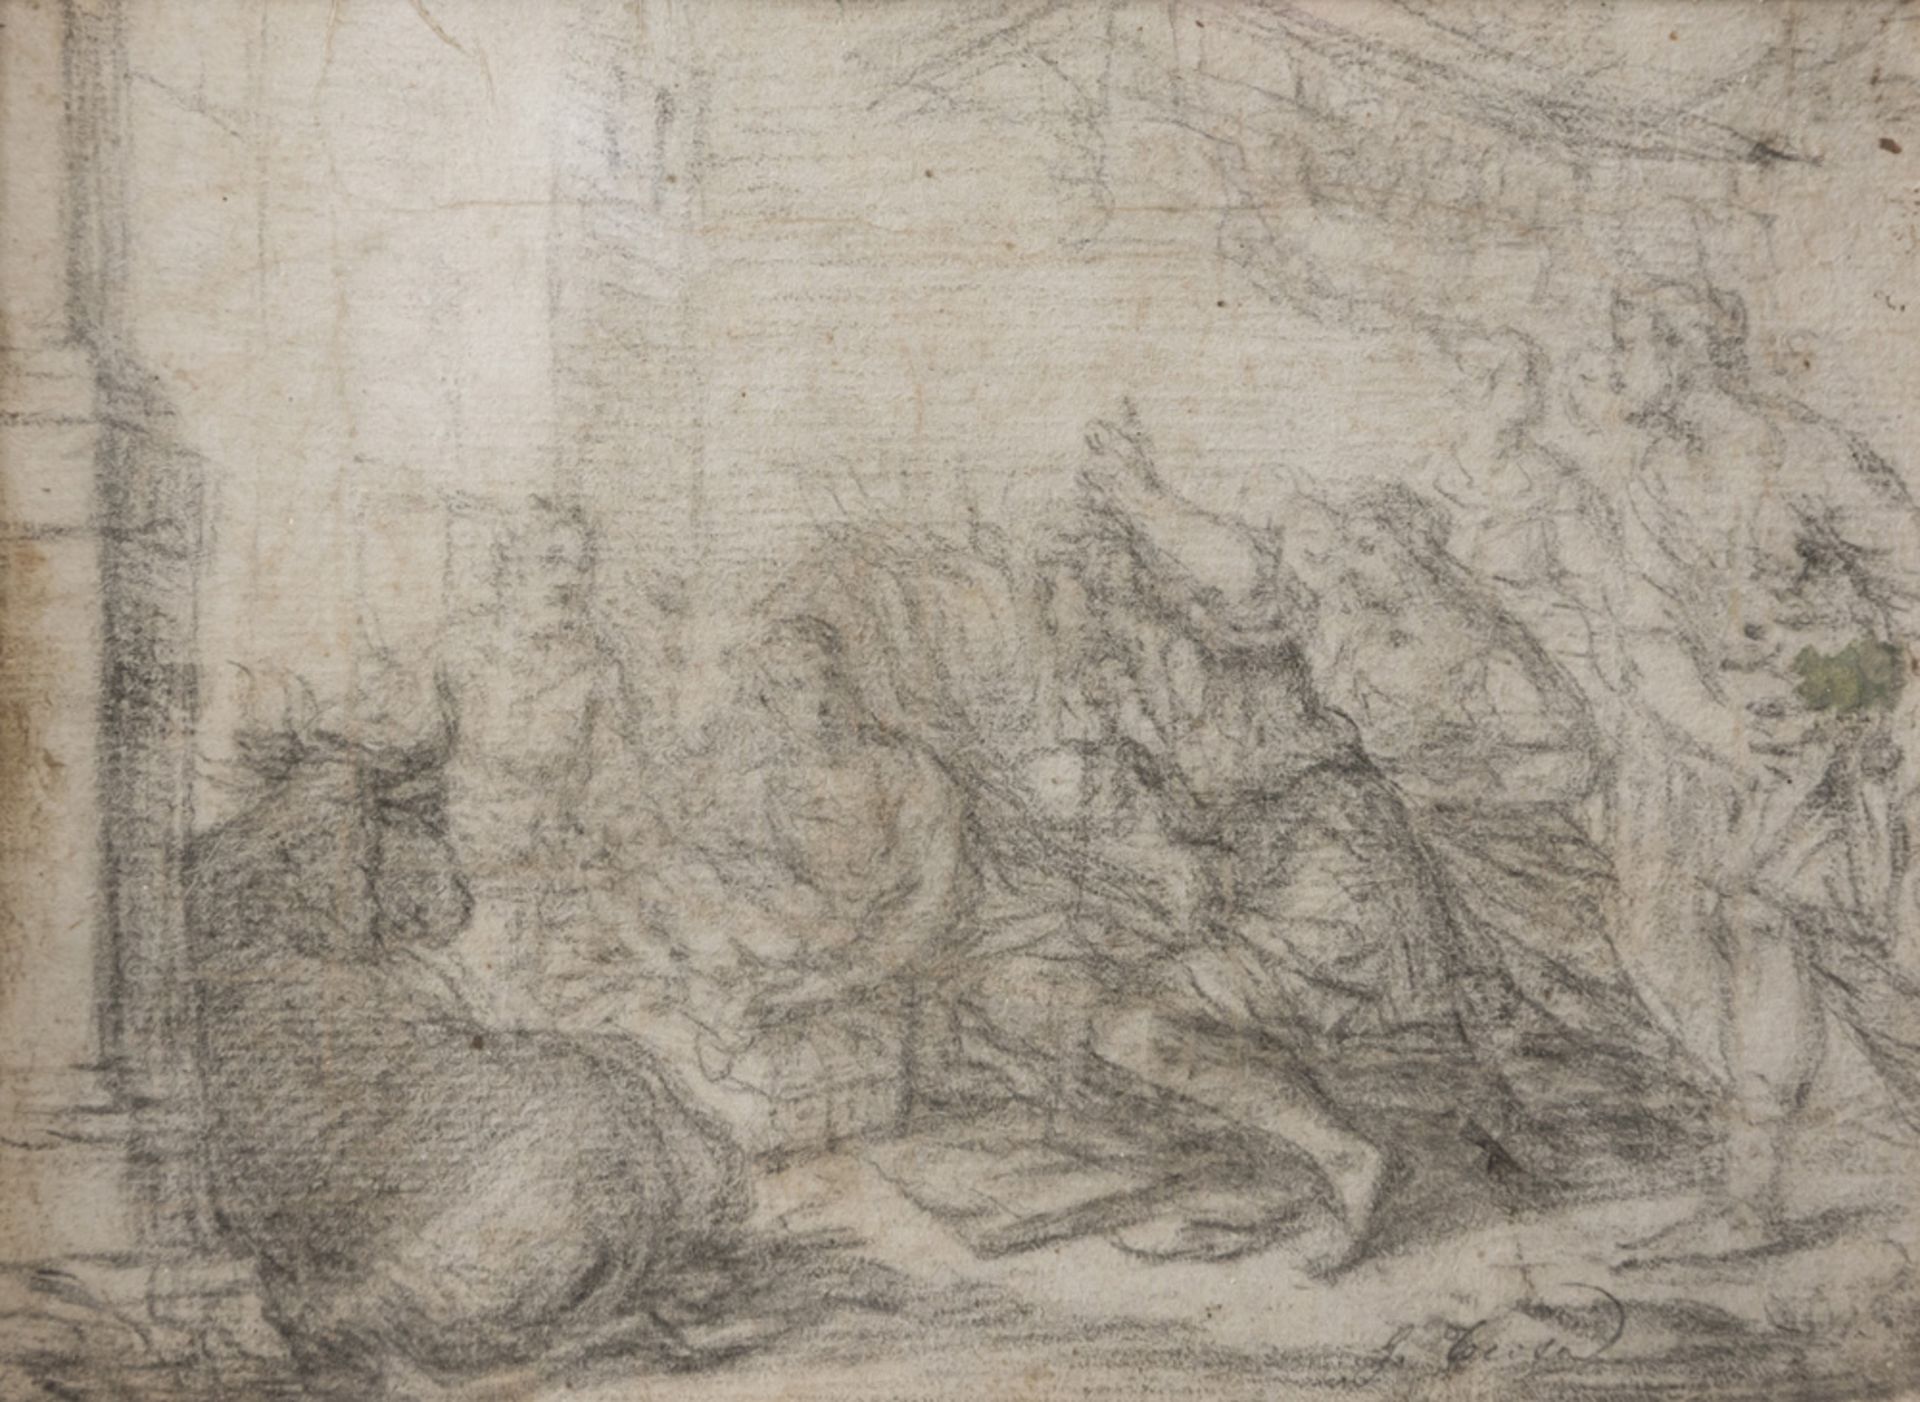 SEBASTIANO CONCA, entourage of (Gaeta 1680 - Naples 1764) The adoration of the Shepherds Pencil on